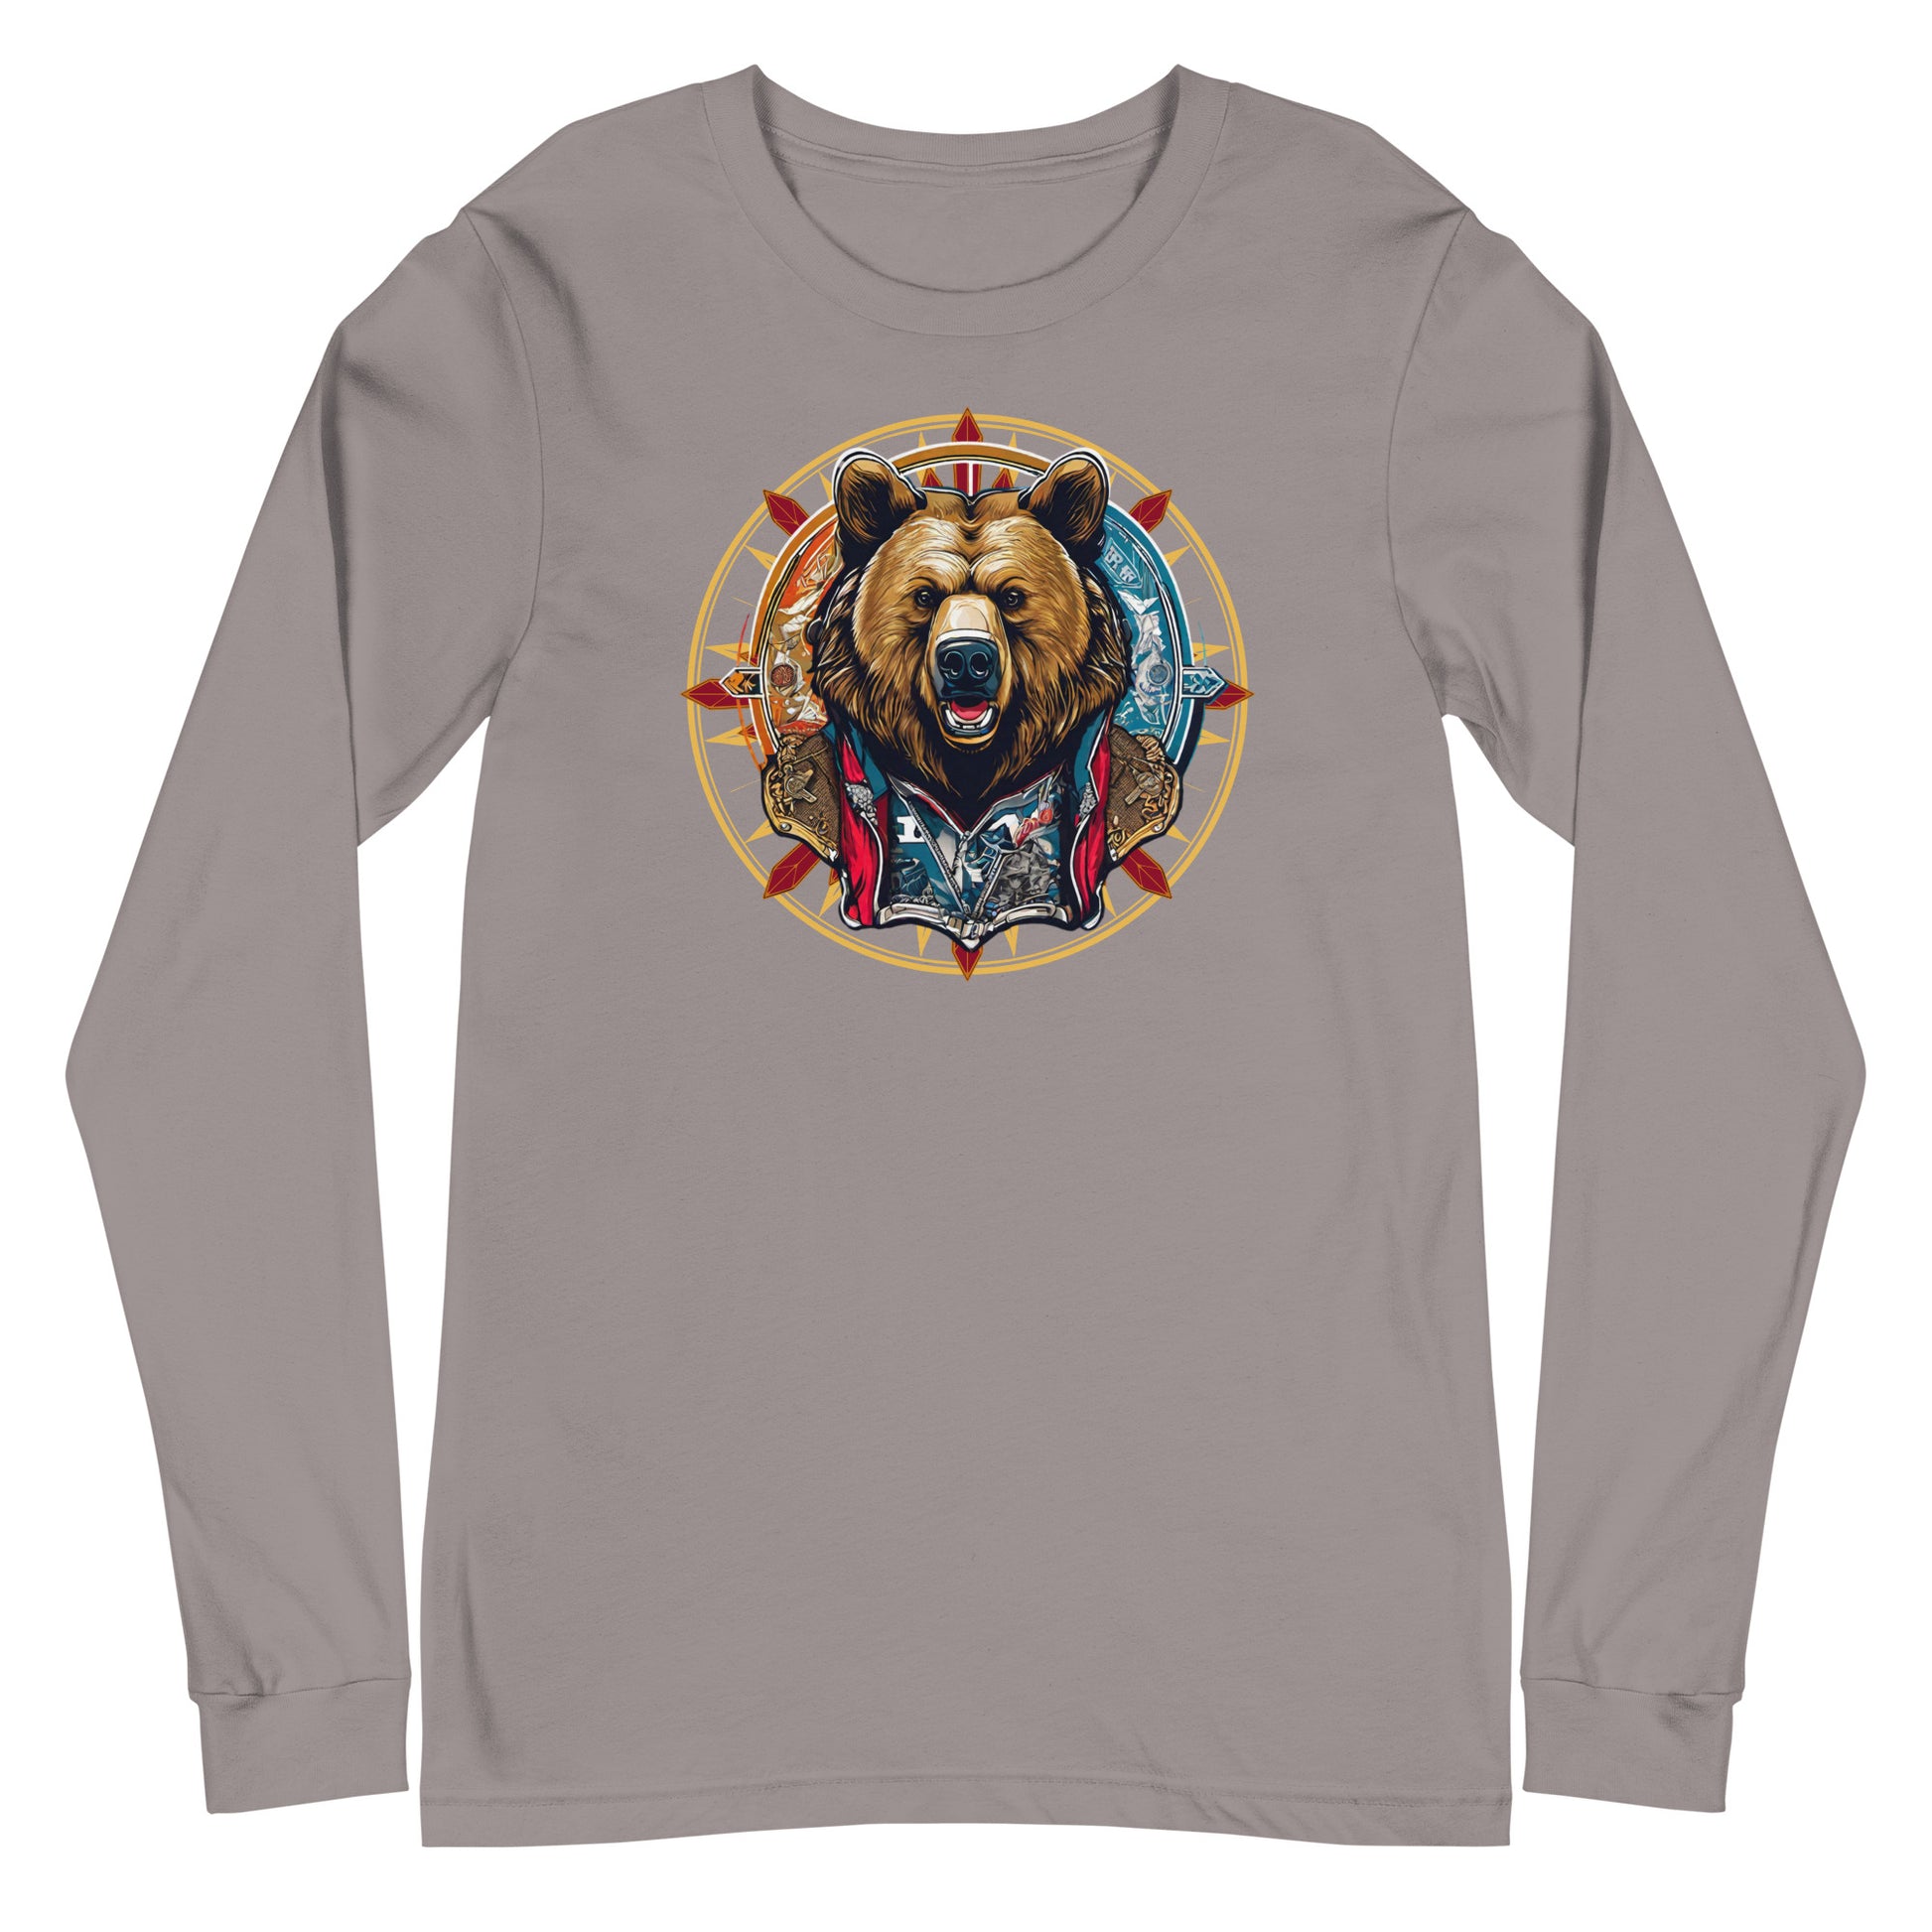 Bear Emblem Long Sleeve Tee Storm